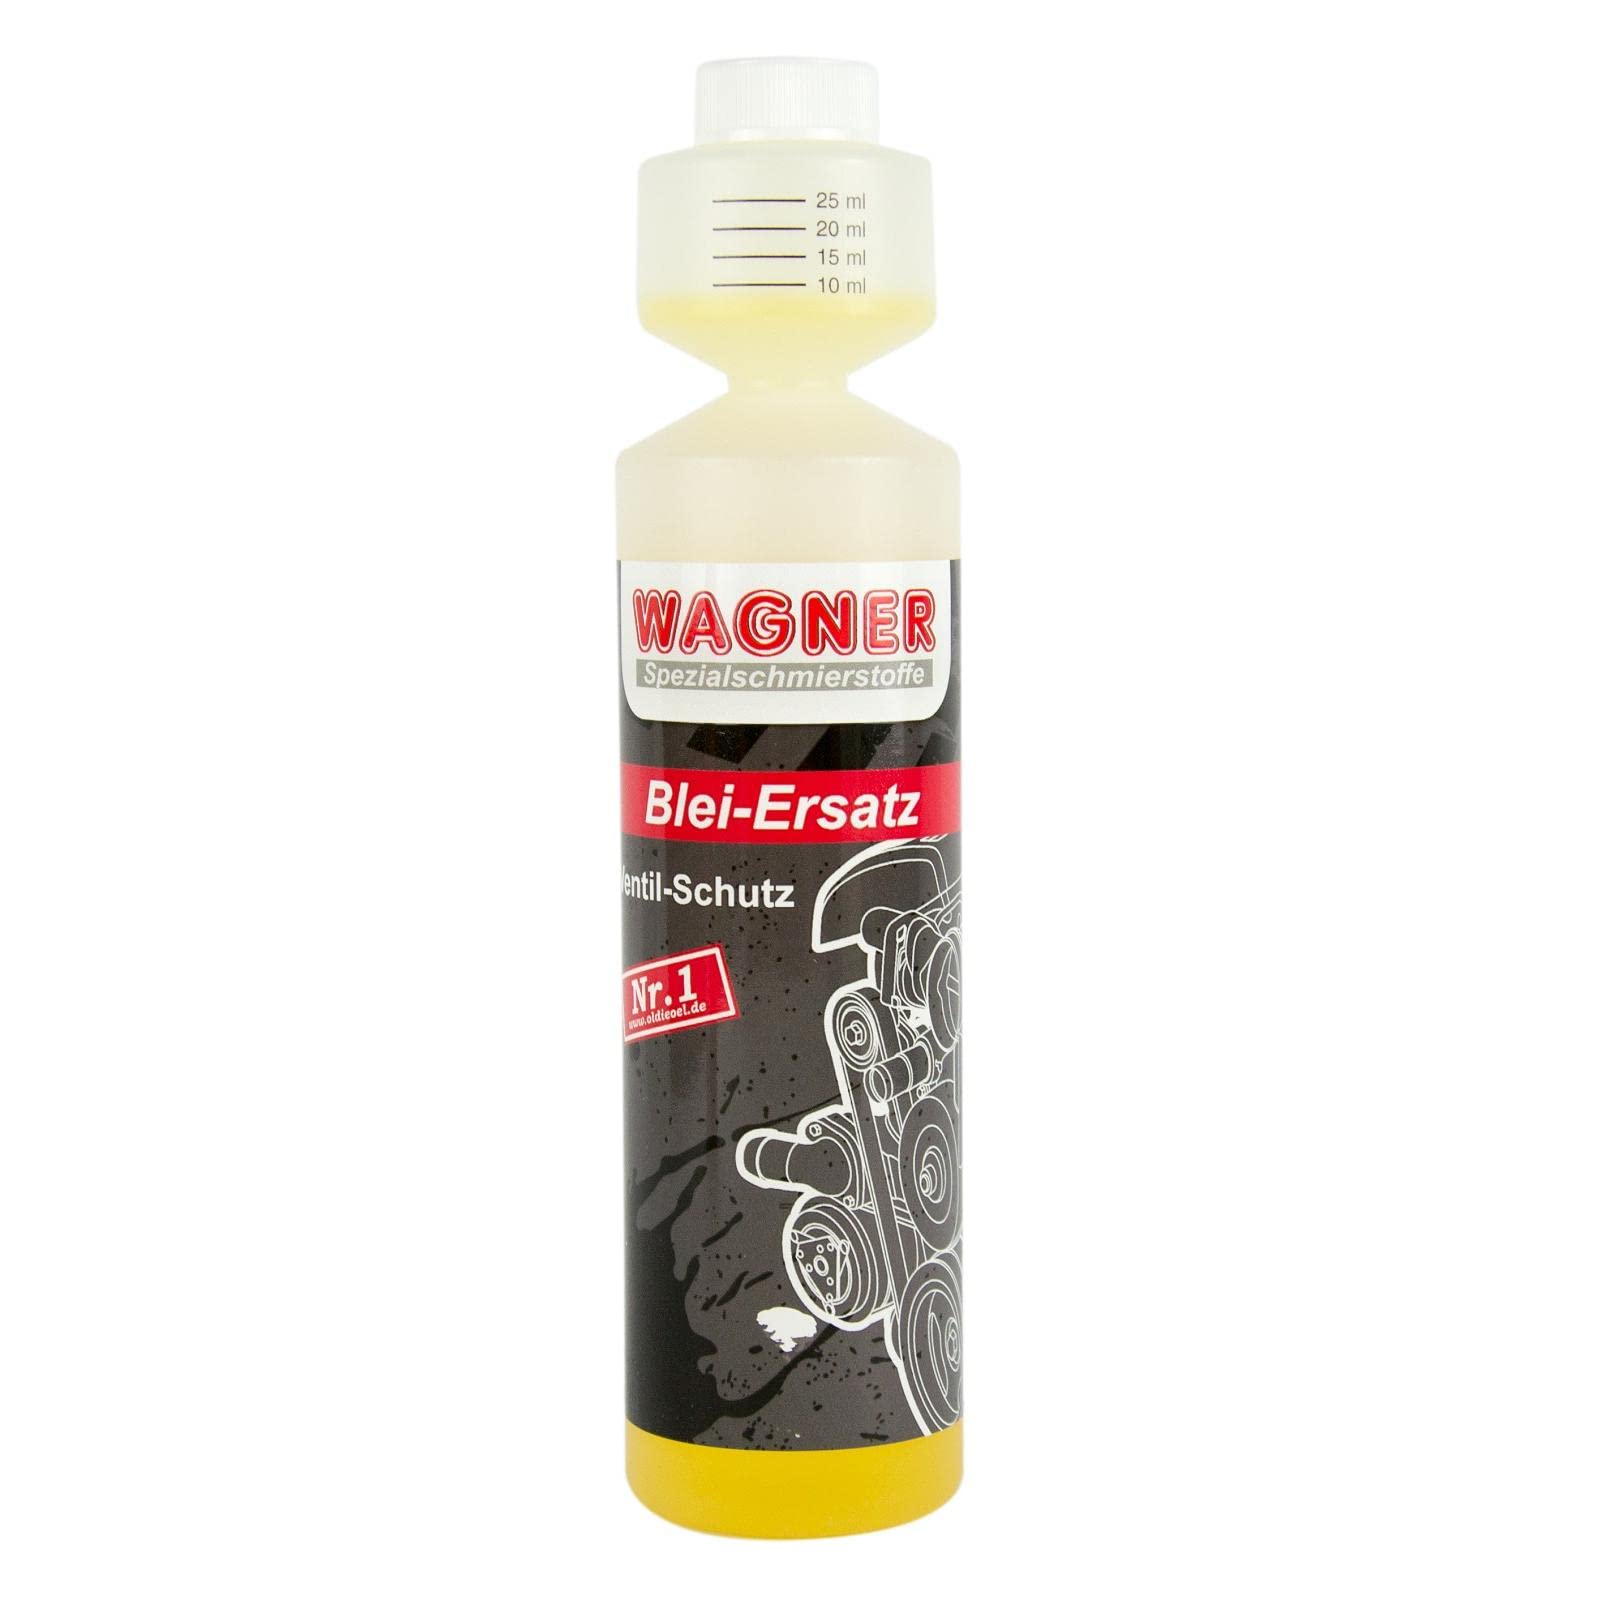 WAGNER Bleiersatz Ventilschutzmittel - 042250 - 250 ml von LaCyan